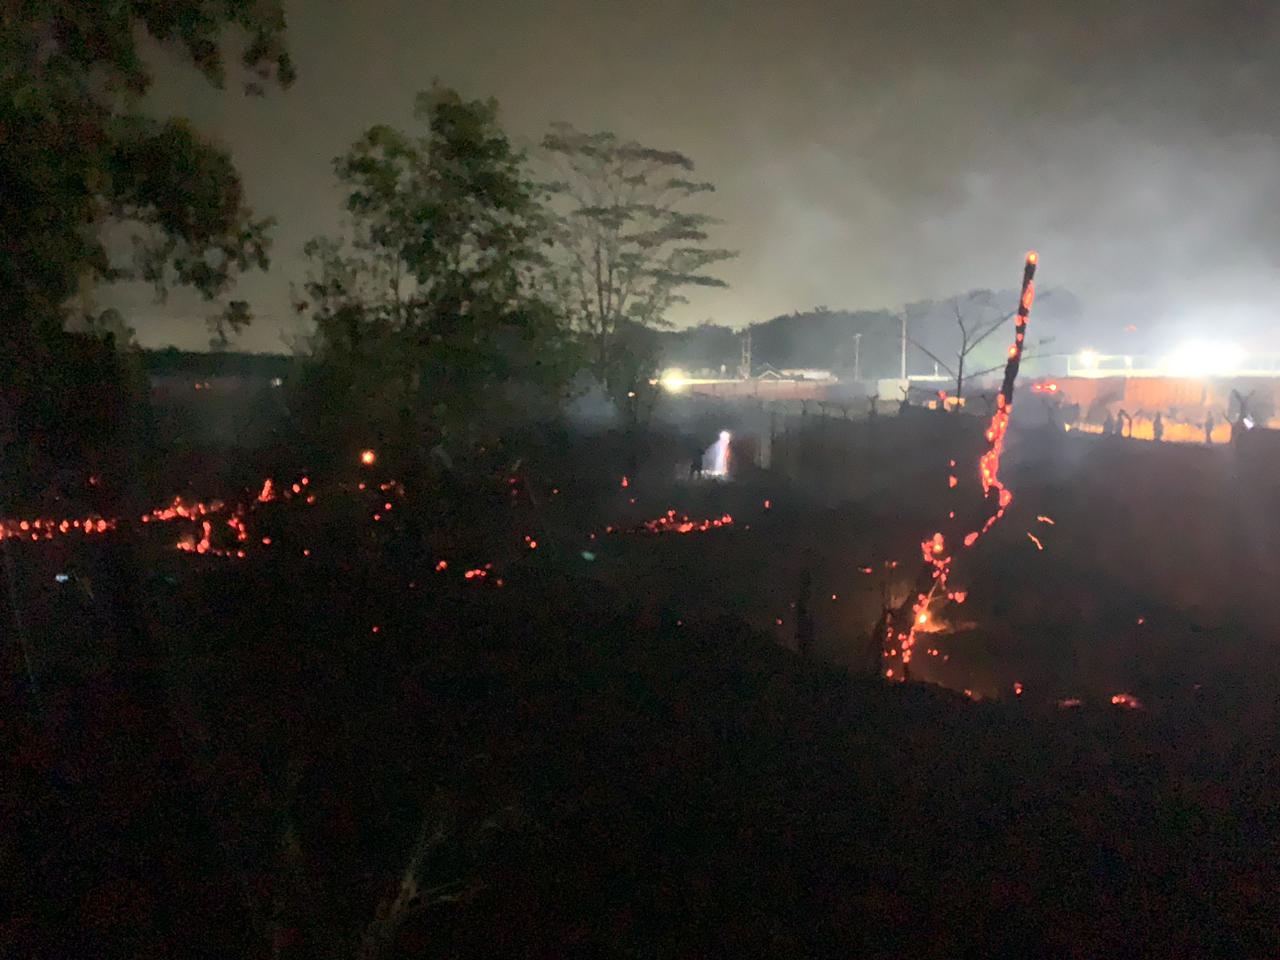 Kebakaran Lahan Terjadi Lagi di Kota Bengkulu, PBK Siaga